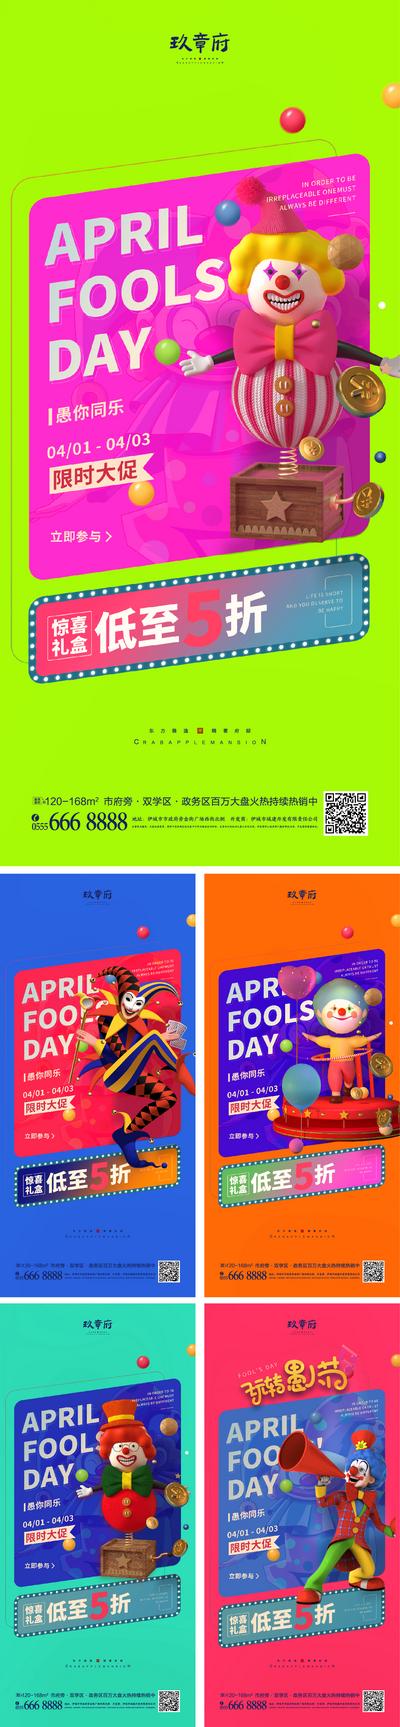 南门网 广告 海报 节日 愚人节 系列 小丑 创意